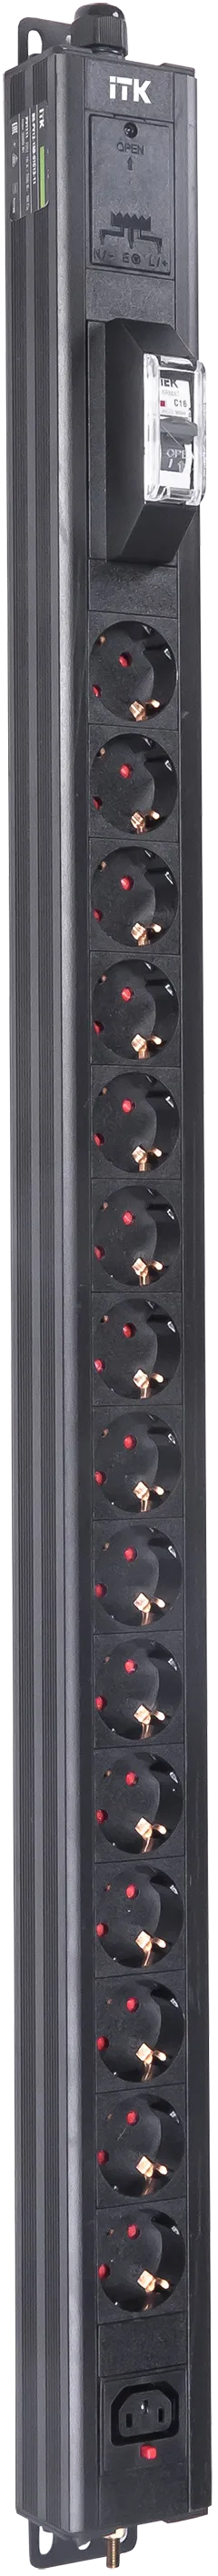 Вертикальный комбинированный блок распределения питания PDU ITK включает в себя розетки двух типов: 15 розеток Schuko и 1 розетку C13 – что позволяет подключать с их помощью различное оборудование. PDU ITK изготавливается из высококачественных термостойких материалов и пластмасс, оснащается 2,6 метровым кабелем электропитания с вилкой Schuko. PDU ITK прекрасно справляется с задачей по электроснабжению сетевого оборудования в шкафах и стойках, а также с требованием защиты от токов короткого замыкания и перенапряжения. PDU ITK соответствует российским и международным стандартам качества и устанавливается с помощью кронштейнов, при этом положение кронштейнов можно менять, либо безынструментальным методом при помощи монтажных штифтов.